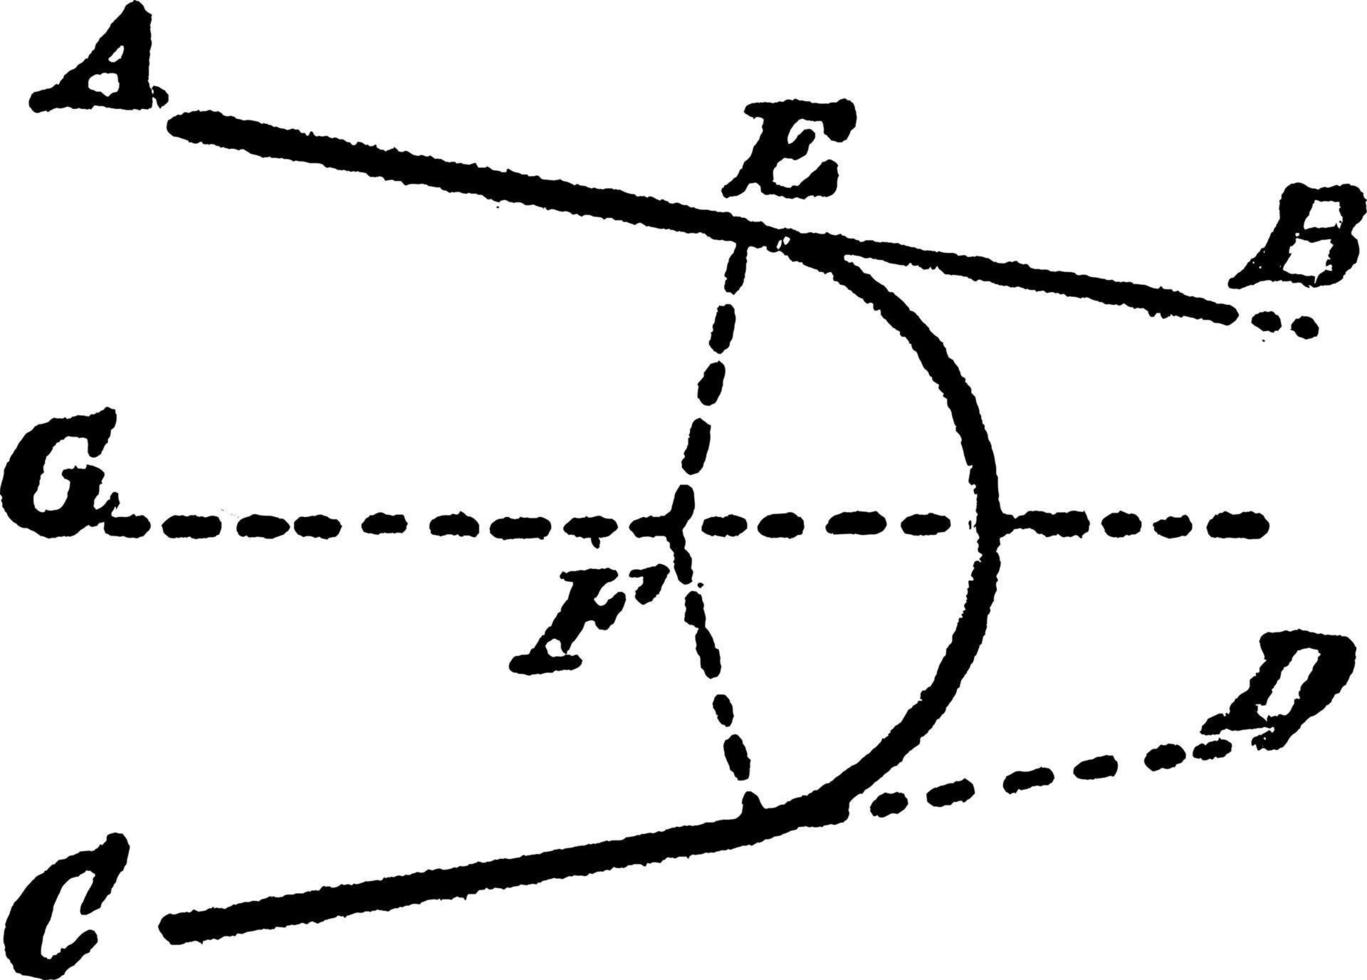 construcción de un círculo tangente a 2 líneas dadas, ilustración antigua. vector